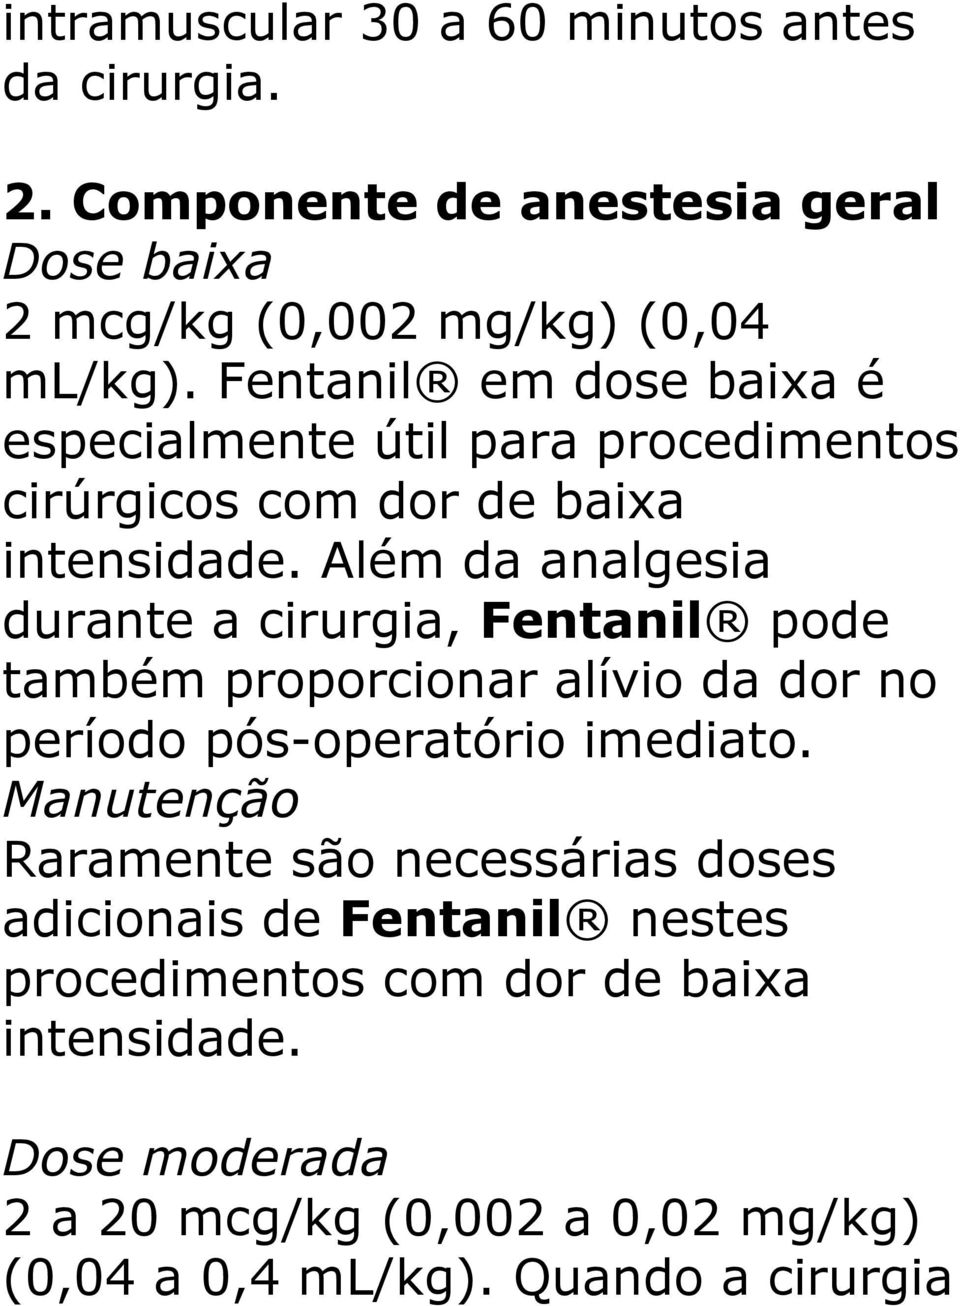 Além da analgesia durante a cirurgia, Fentanil pode também proporcionar alívio da dor no período pós-operatório imediato.